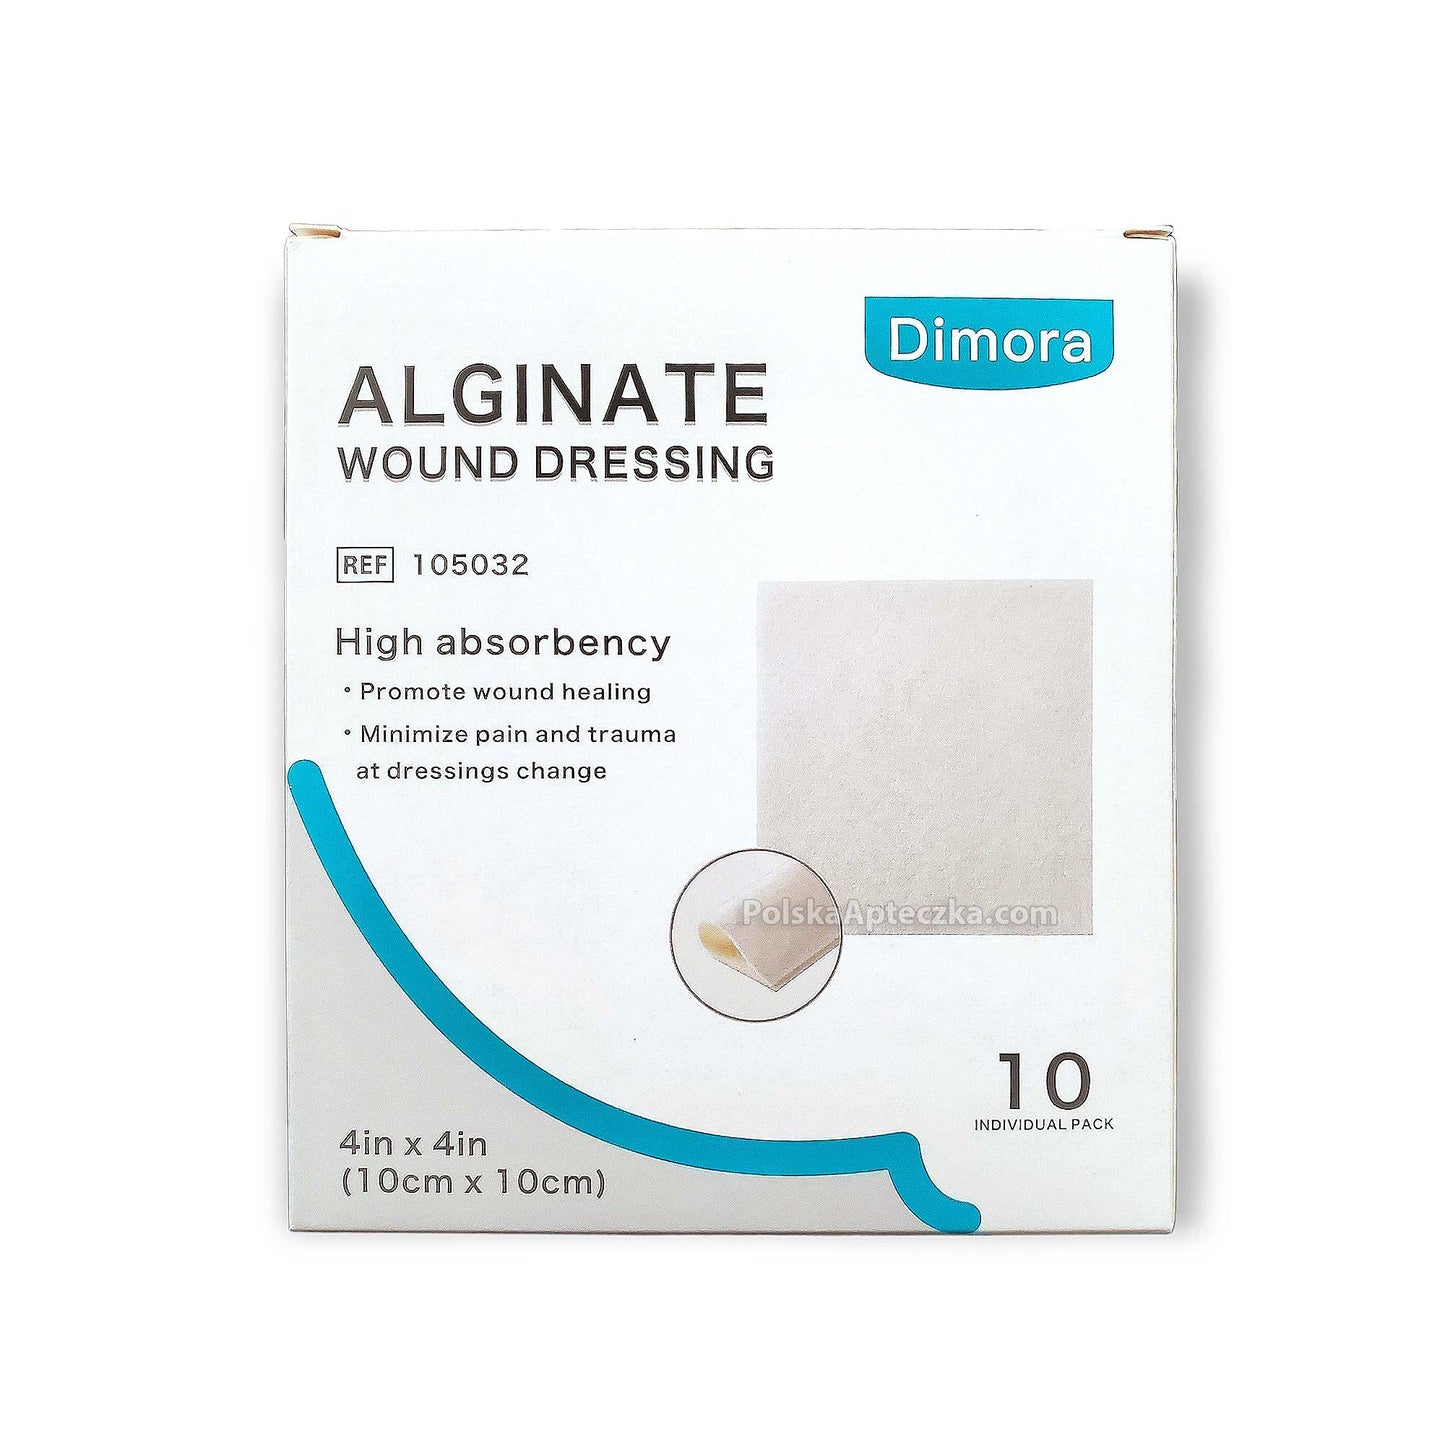 Alginate Wound Dressing 4"x4" (10cm x 10cm) 10 dressings